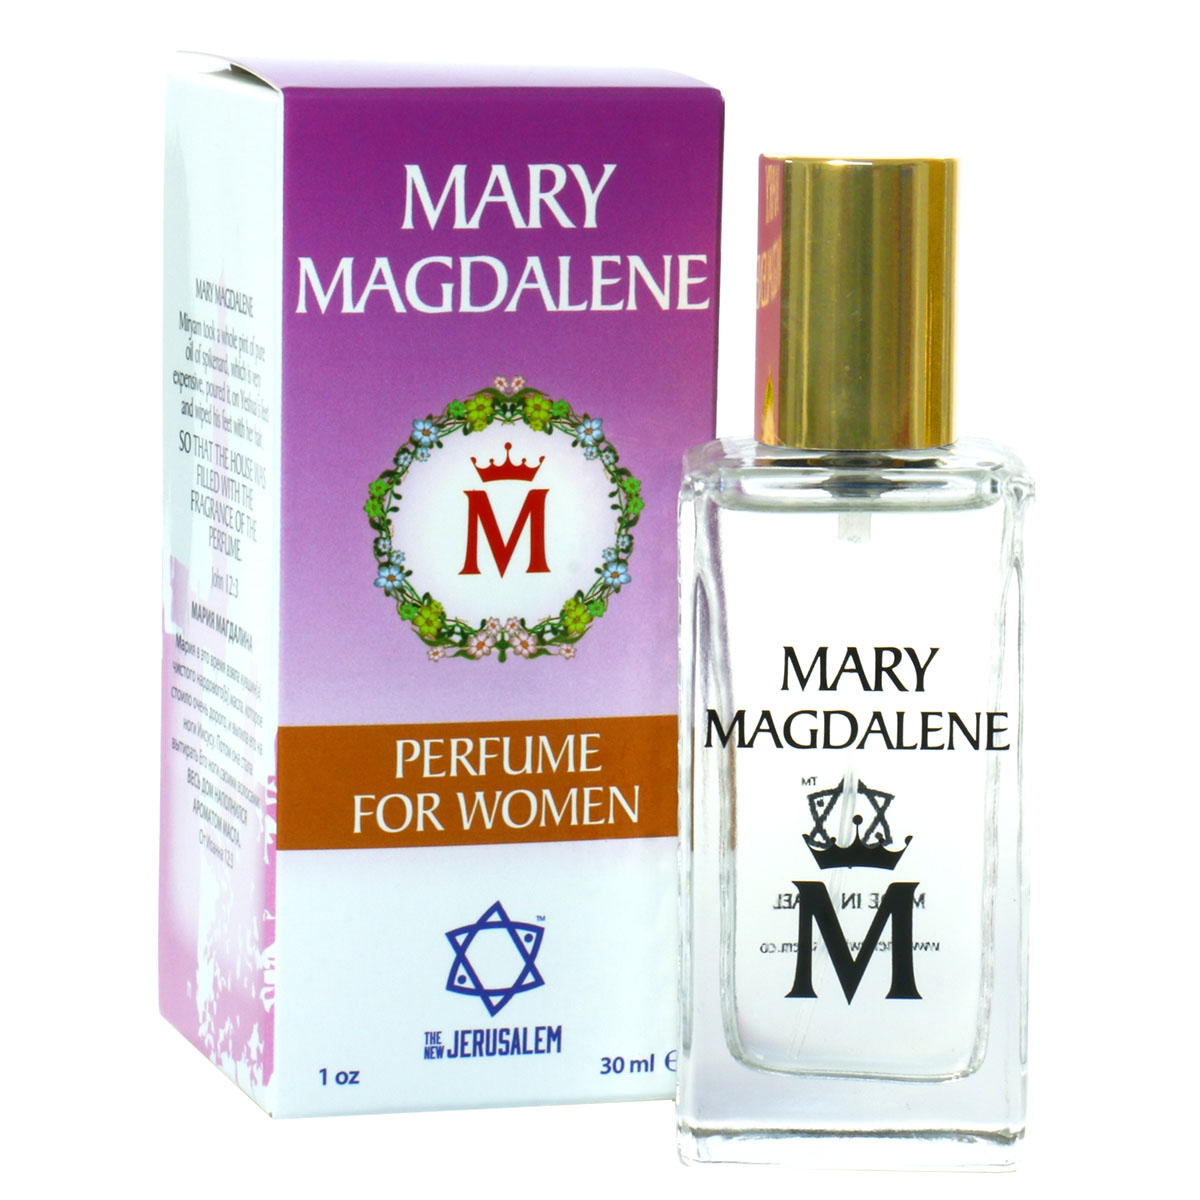 Mary Magdalene Perfume for Women - 1